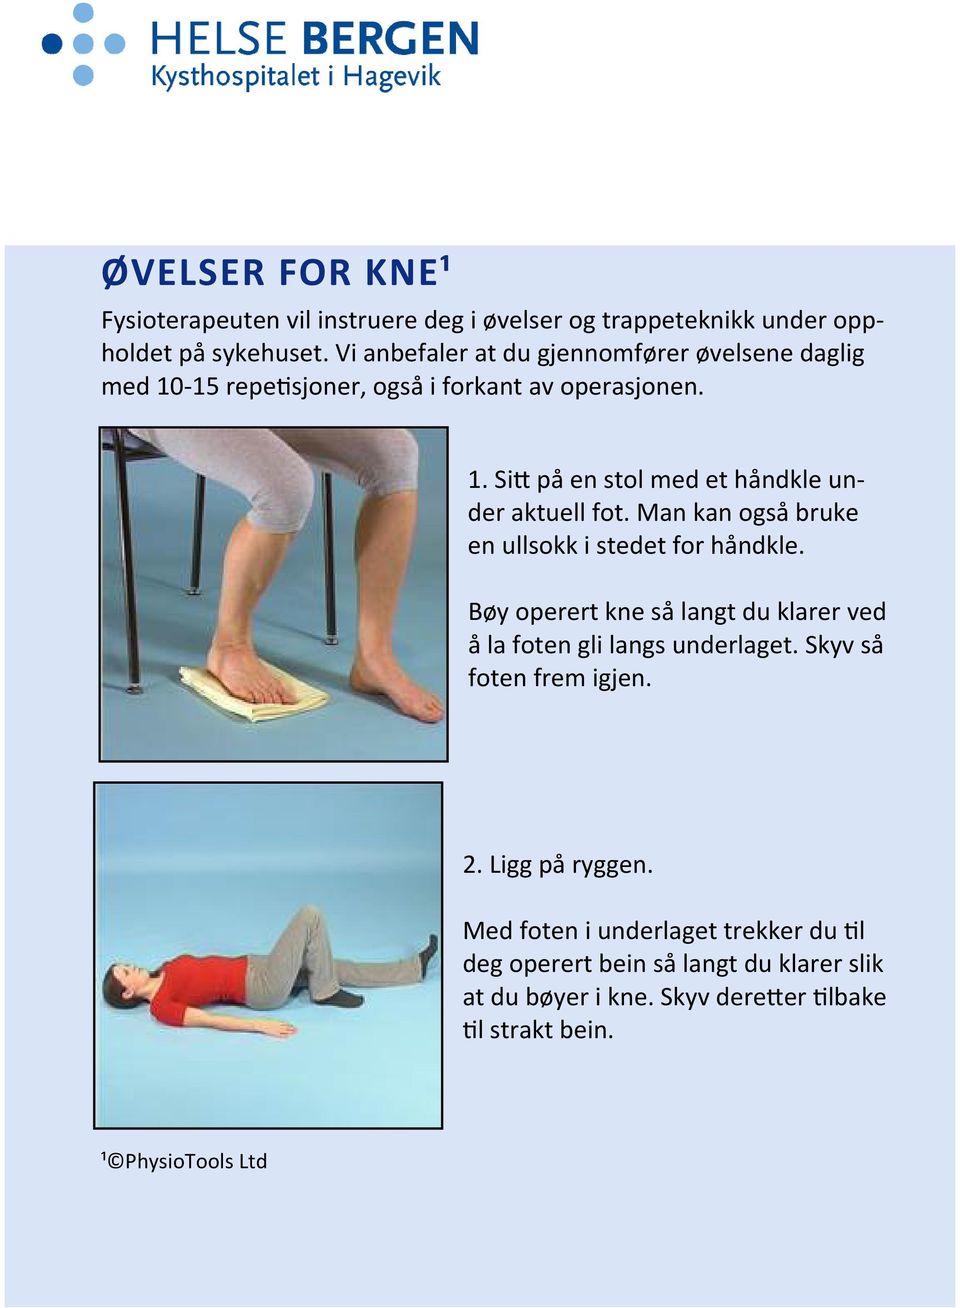 Man kan også bruke en ullsokk i stedet for håndkle. Bøy operert kne så langt du klarer ved å la foten gli langs underlaget.